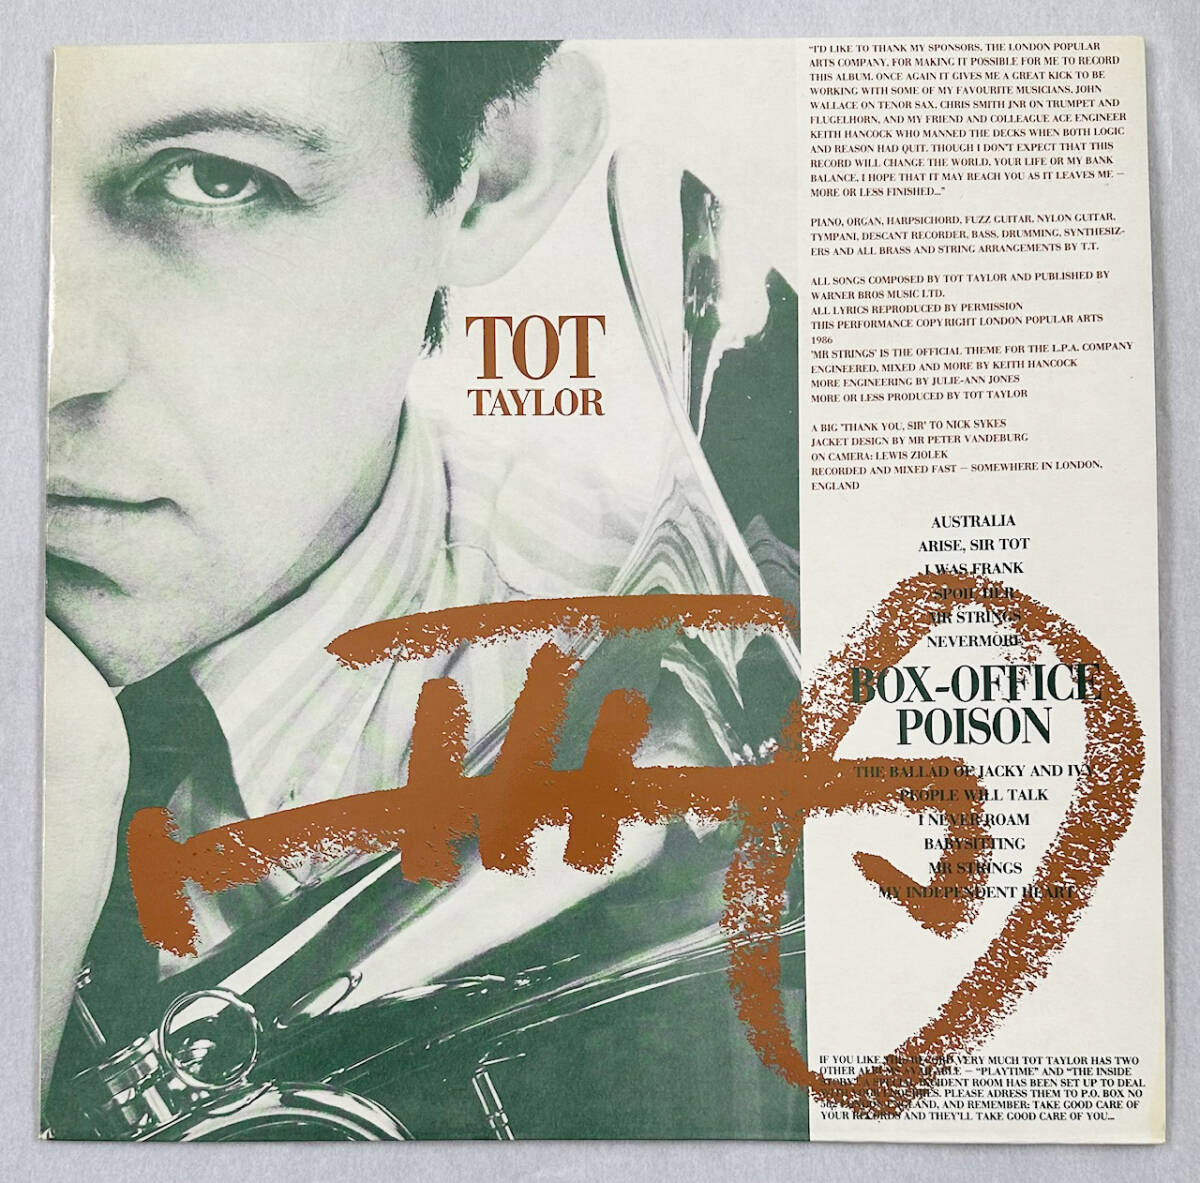 ■1986年 オリジナル U盤 新品 Tot Taylor - Box-Office Poison 12”LP TOTAL 3 London Popular Arts_画像1